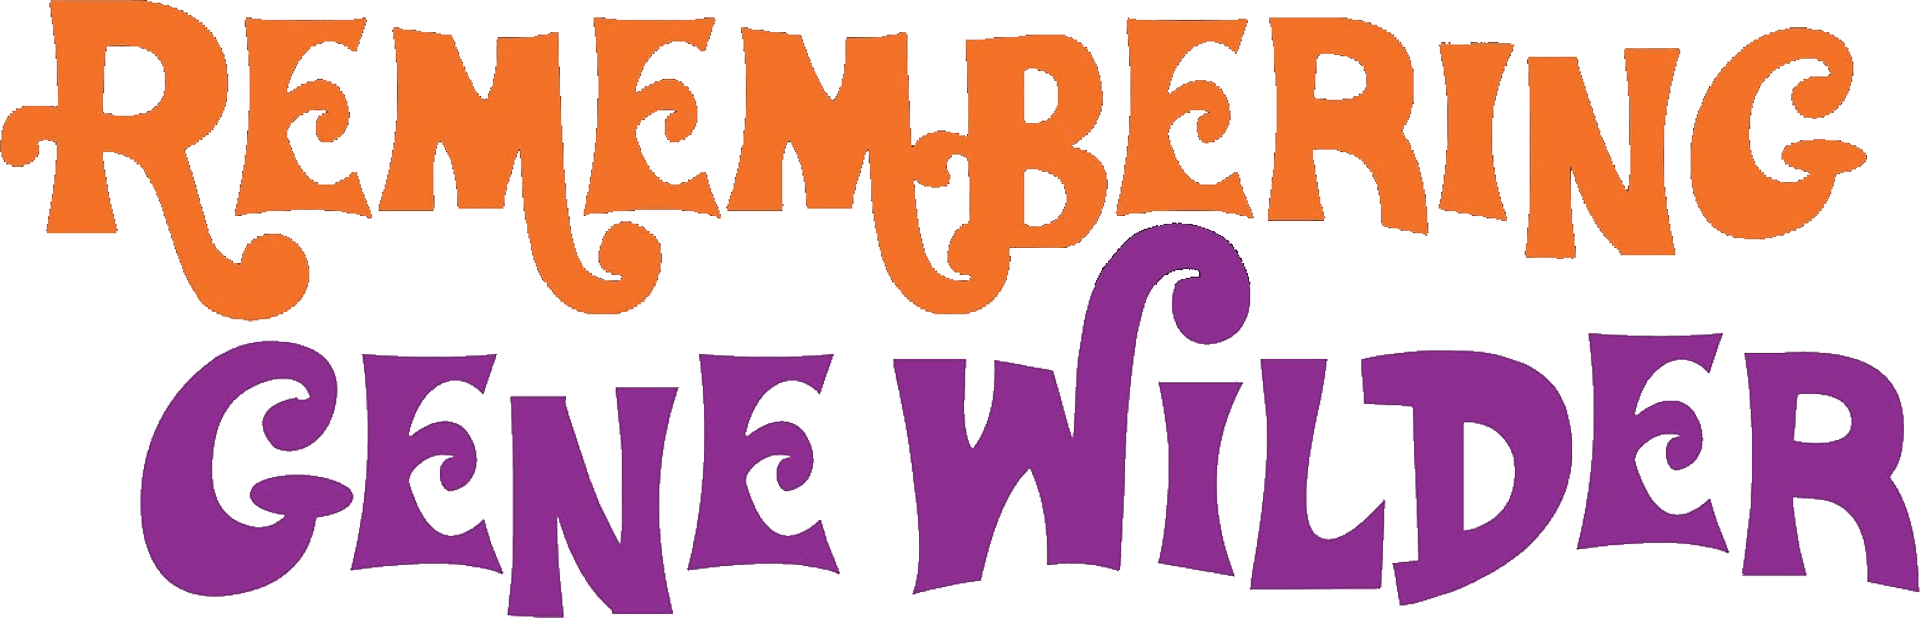 Remembering Gene Wilder logo